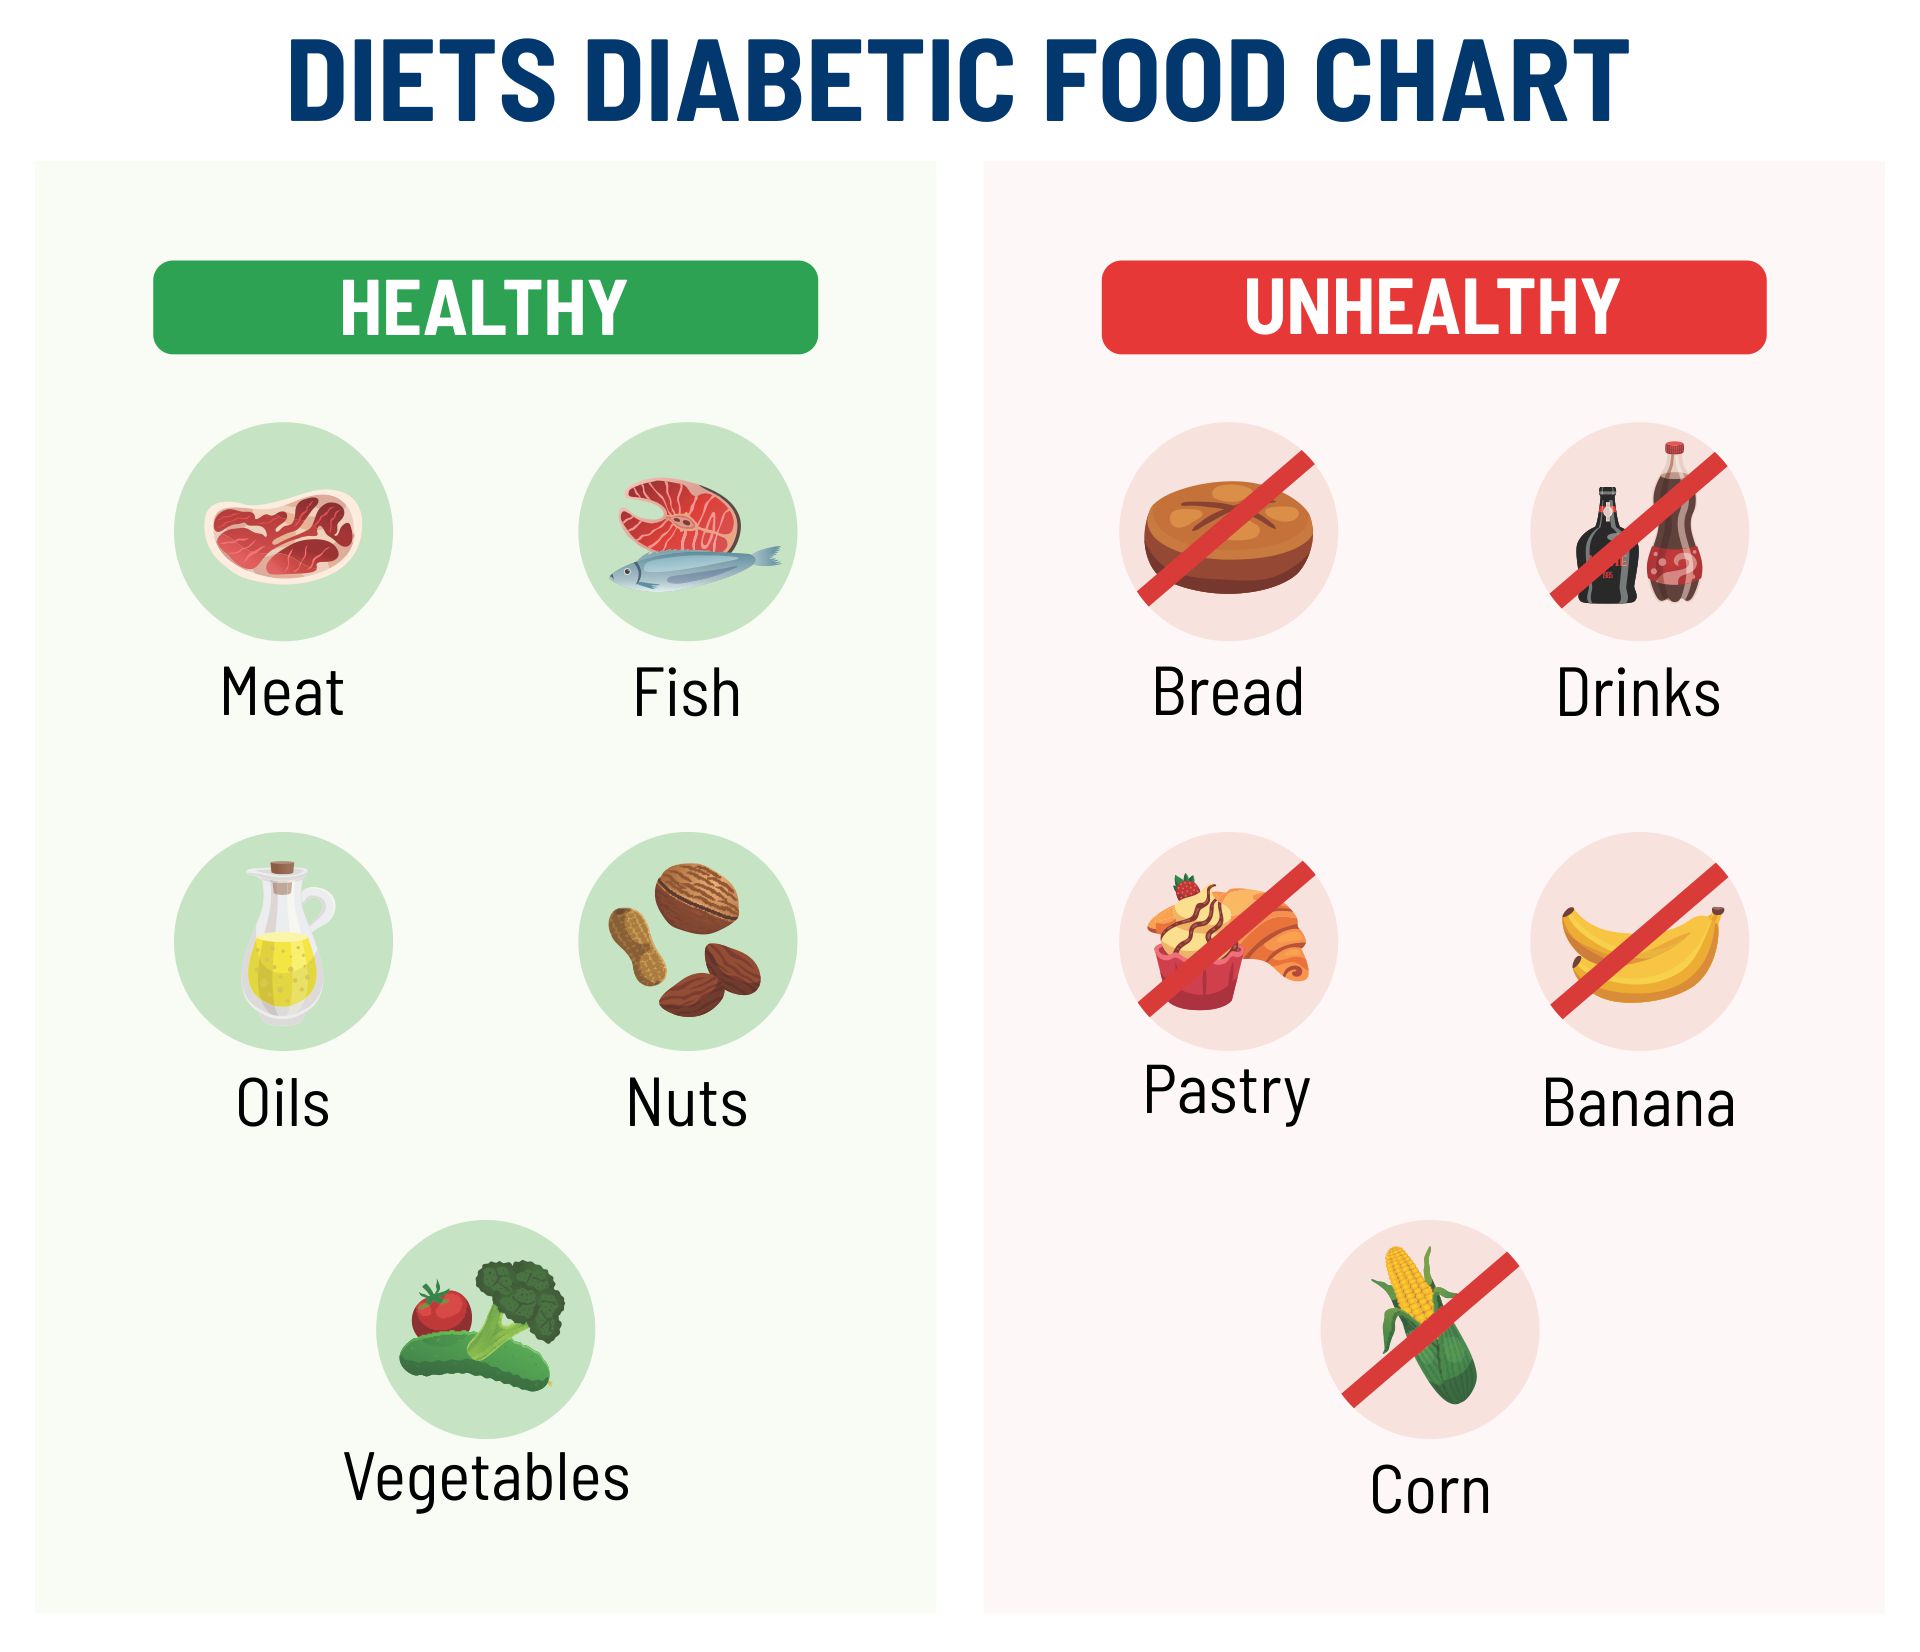 5 Best Images of Diabetes Printable Chart Food Healthy - Diabetic Food ...